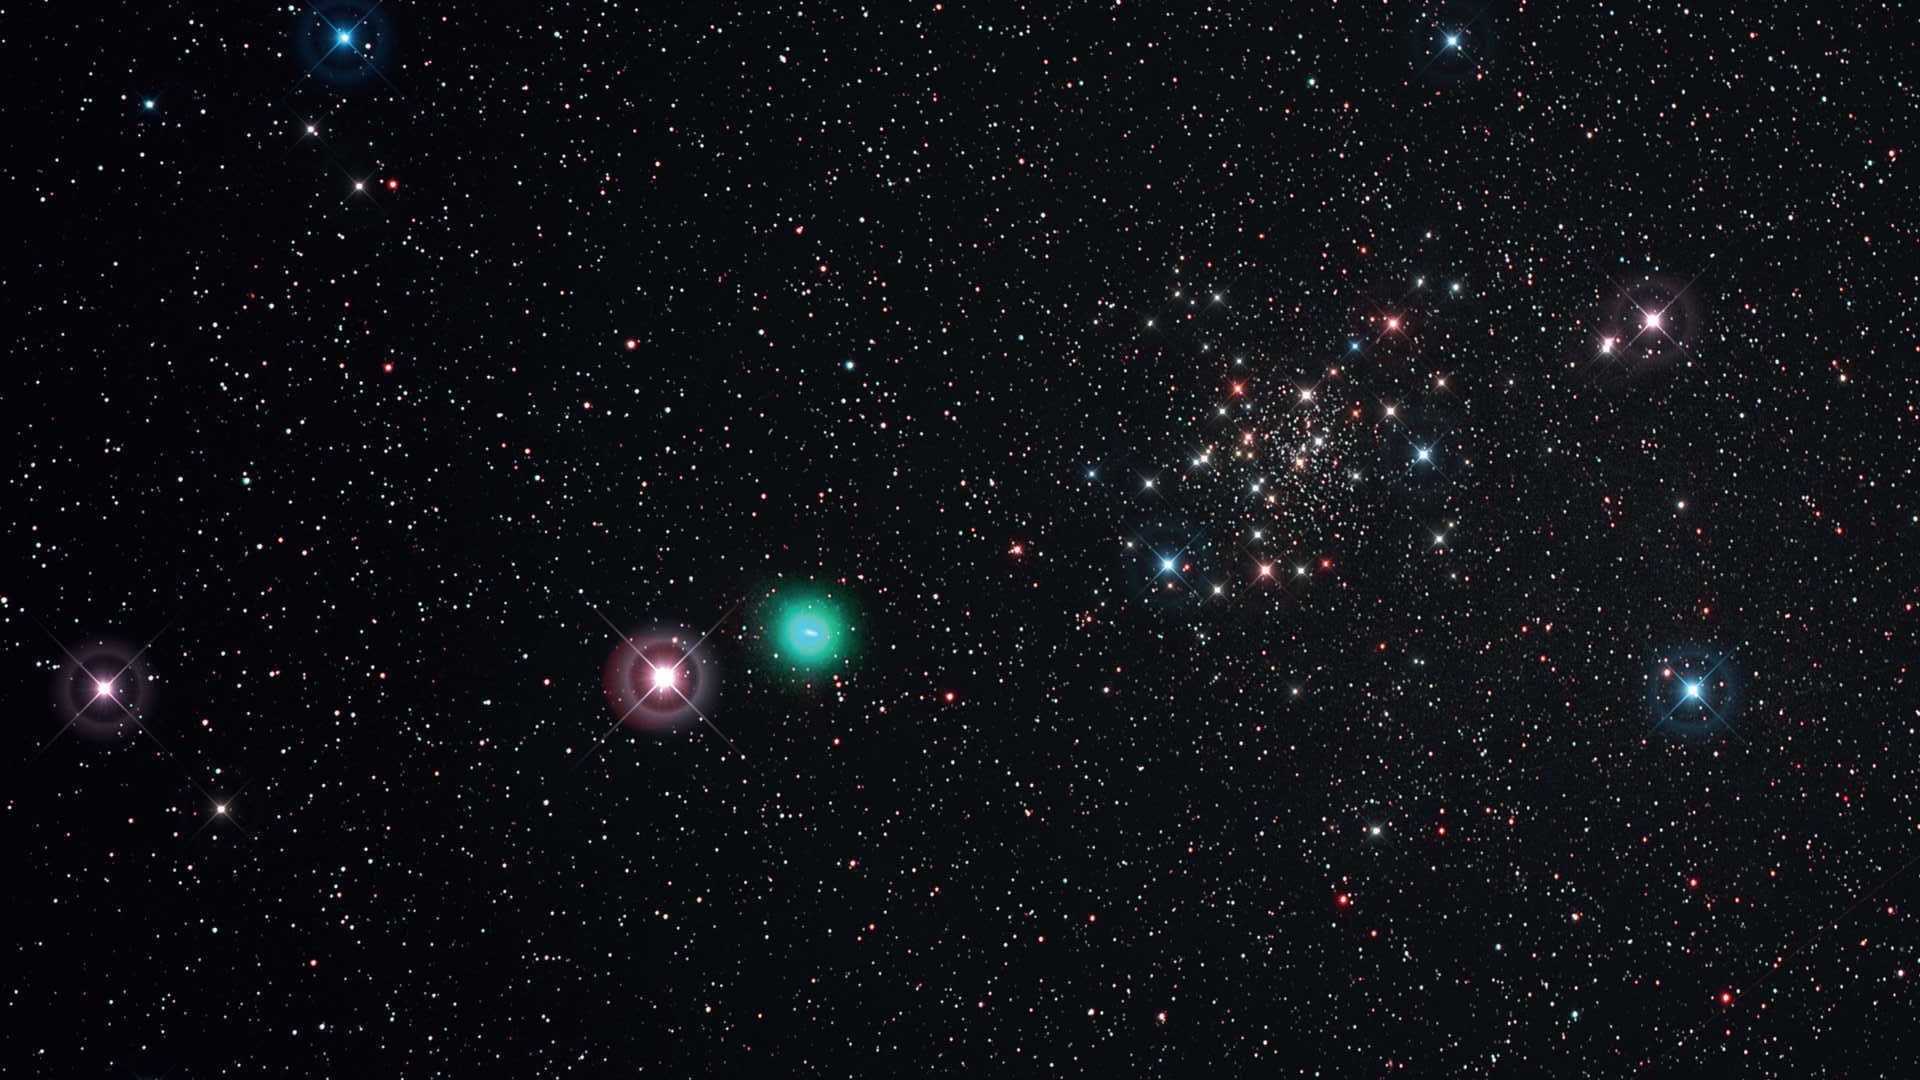 A noite clara de 21.5.2015 permitiu fotografar o cometa C/2014 Q2 (Lovejoy) ao passar pela borda do aglomerado estelar NGC188. Esta fotografia foi tirada com uma lente teleobjetiva/monóculo Kowa (distância focal: 350 mm, F/4) numa Canon D6 (modificada para Hα) com filtro UHC-S. Imagem constituída por seis fotografias com um tempo de exposição individual de 450 segundos (ISO 800; tempo de exposição total: 45 minutos). Editadas no DeepSkyStacker e Photoshop; foram adicionados “Spikes” apenas por uma questão estética. U. Dittler